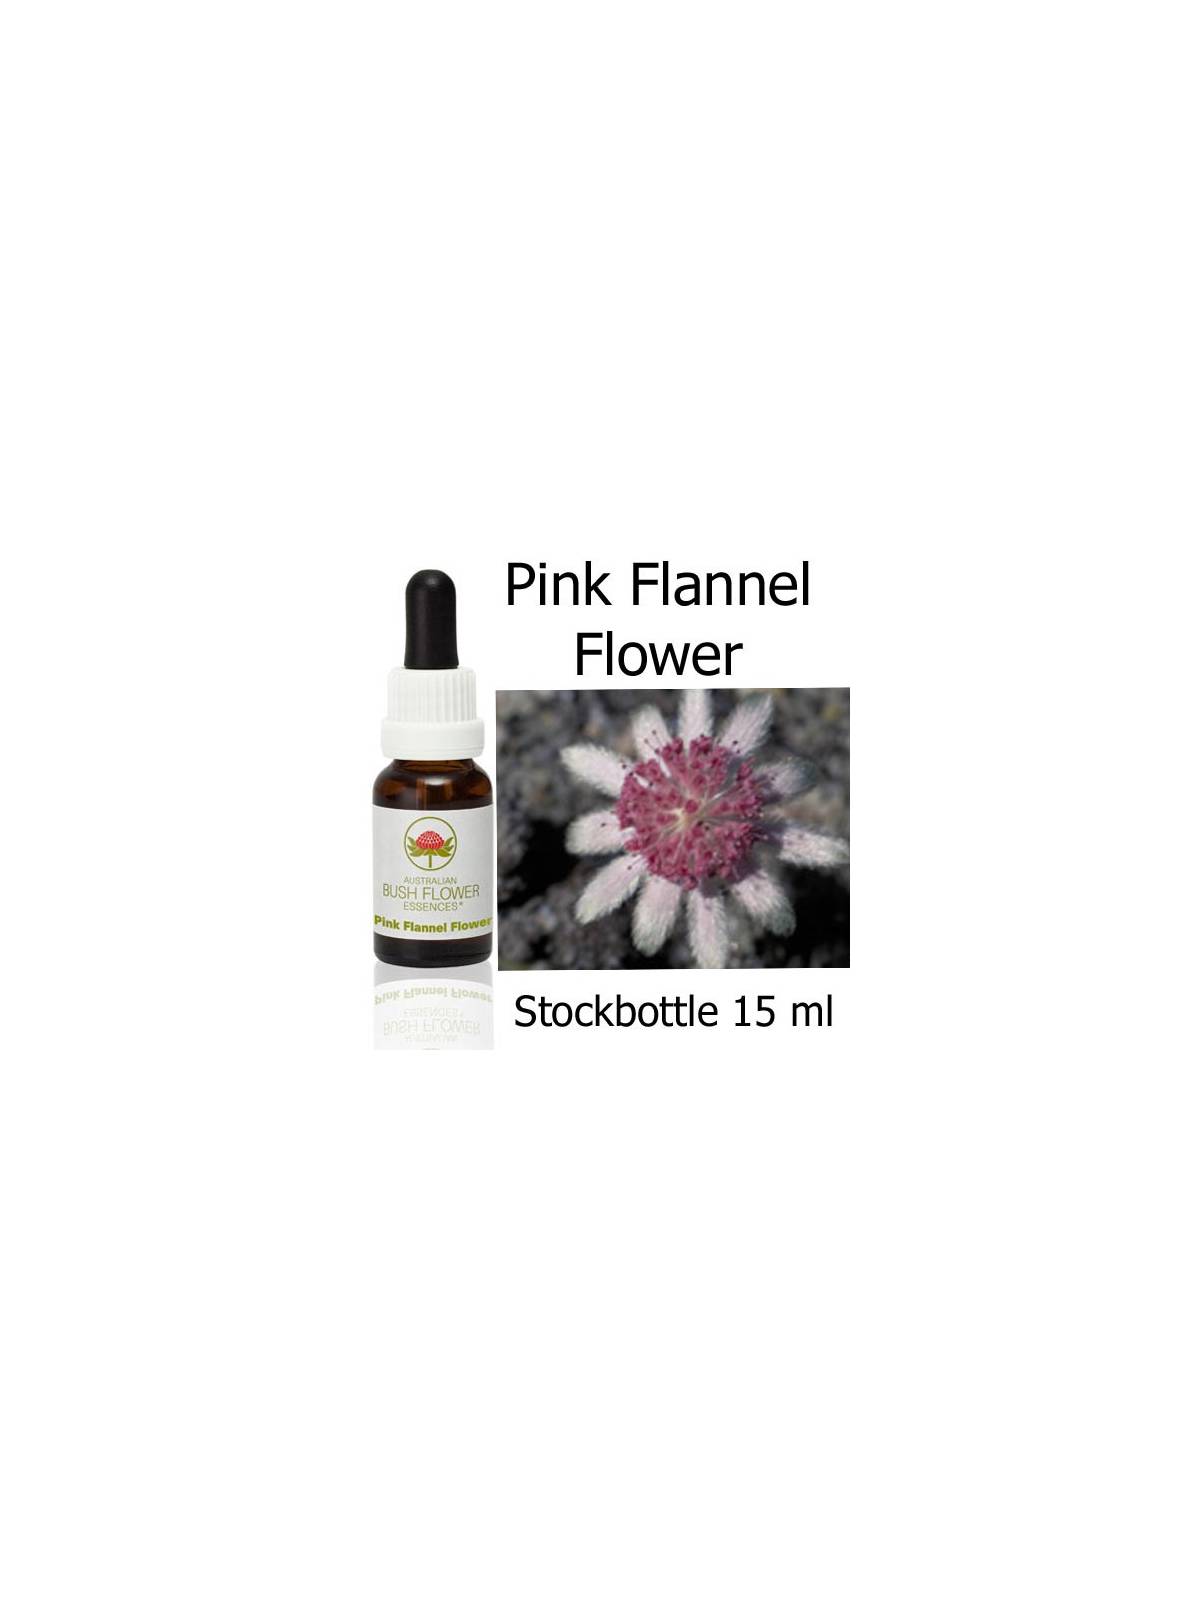 Fiori Australiani Pink Flannel Flower Australian Bush Flower Essences